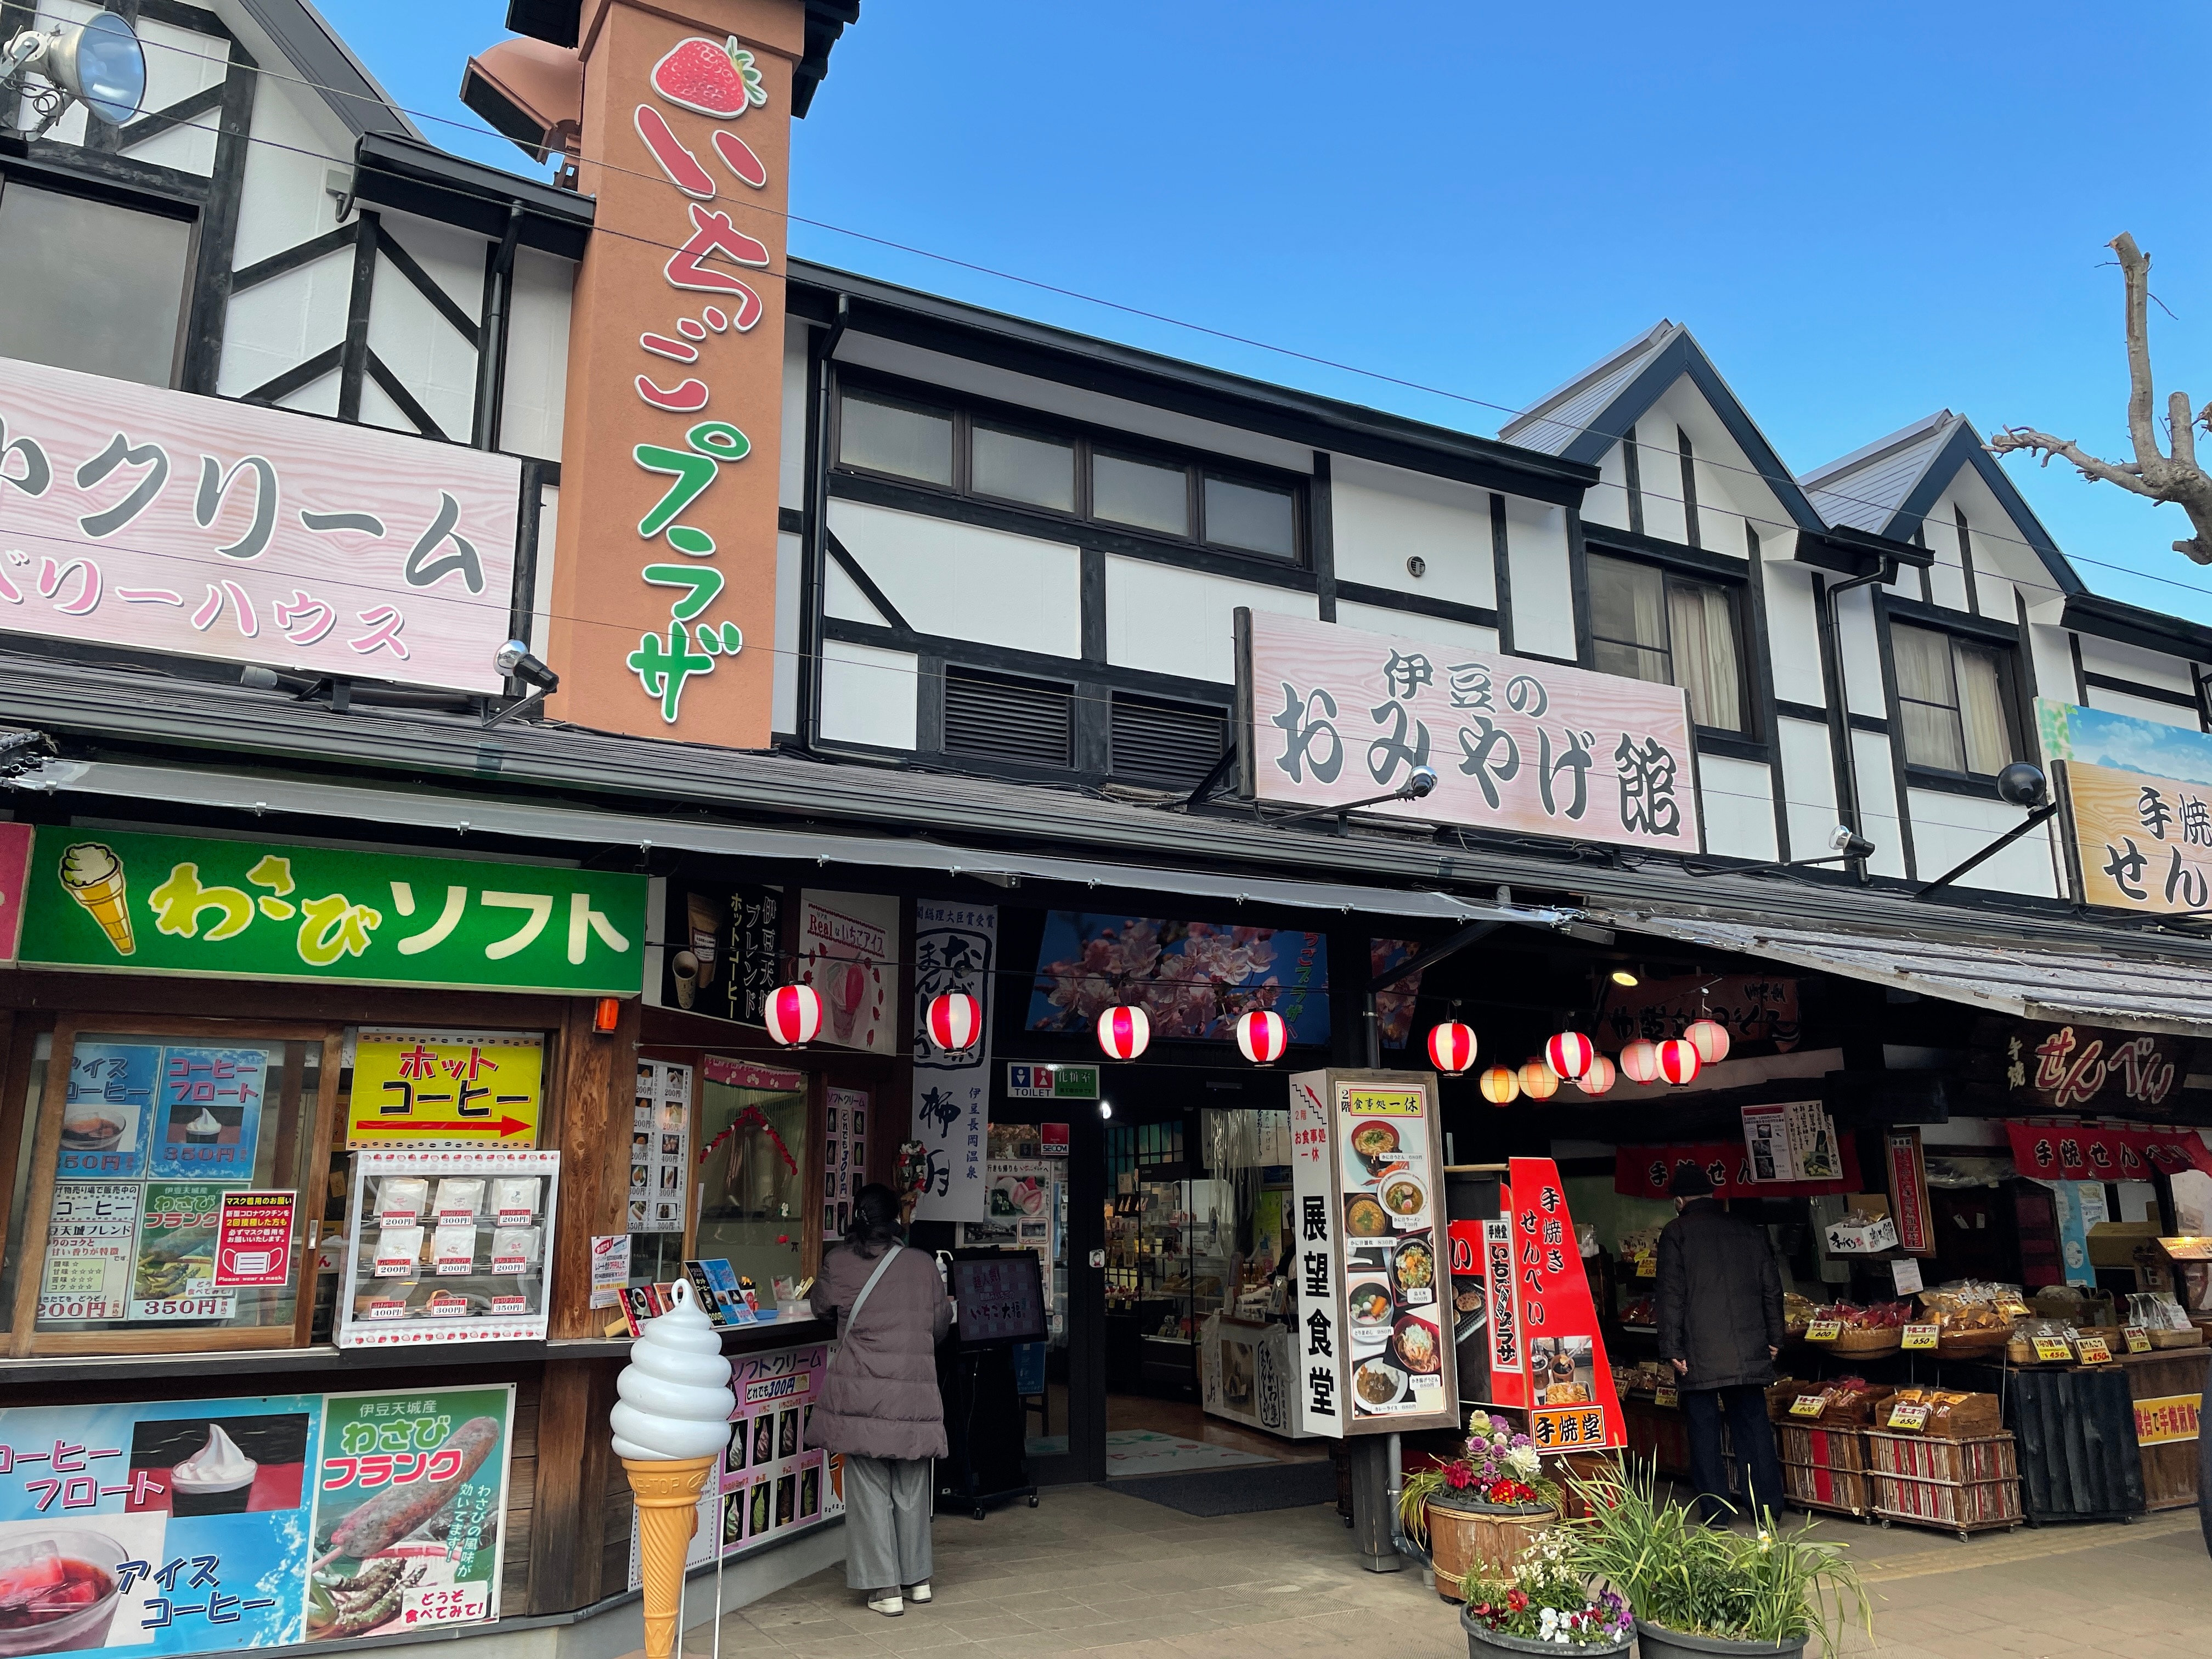 相模原・町田の賃貸管理会社オリバーの「河津桜まつりツアー」。いちごプラザで伊豆のおみやげを存分にお買い物できます。